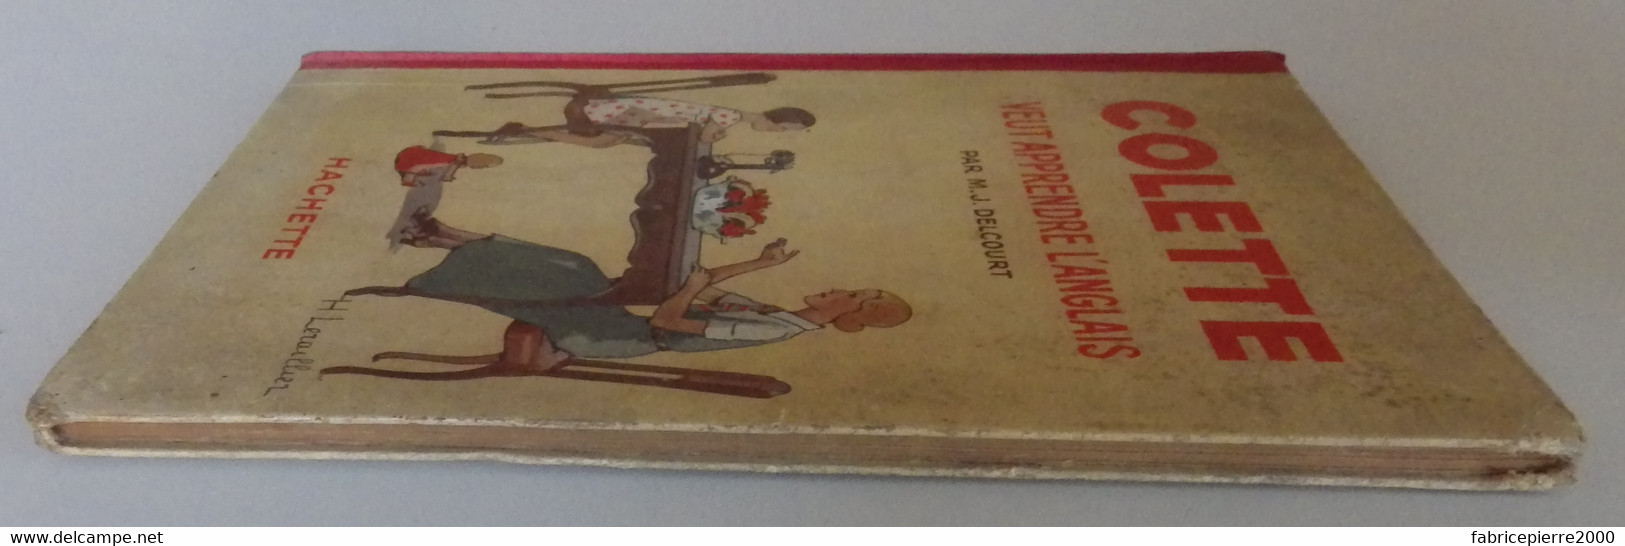 DELCOURT - Colette Veut Apprendre L'anglais Ill. H. Leraillier Hachette 1935 BON ETAT - Hachette